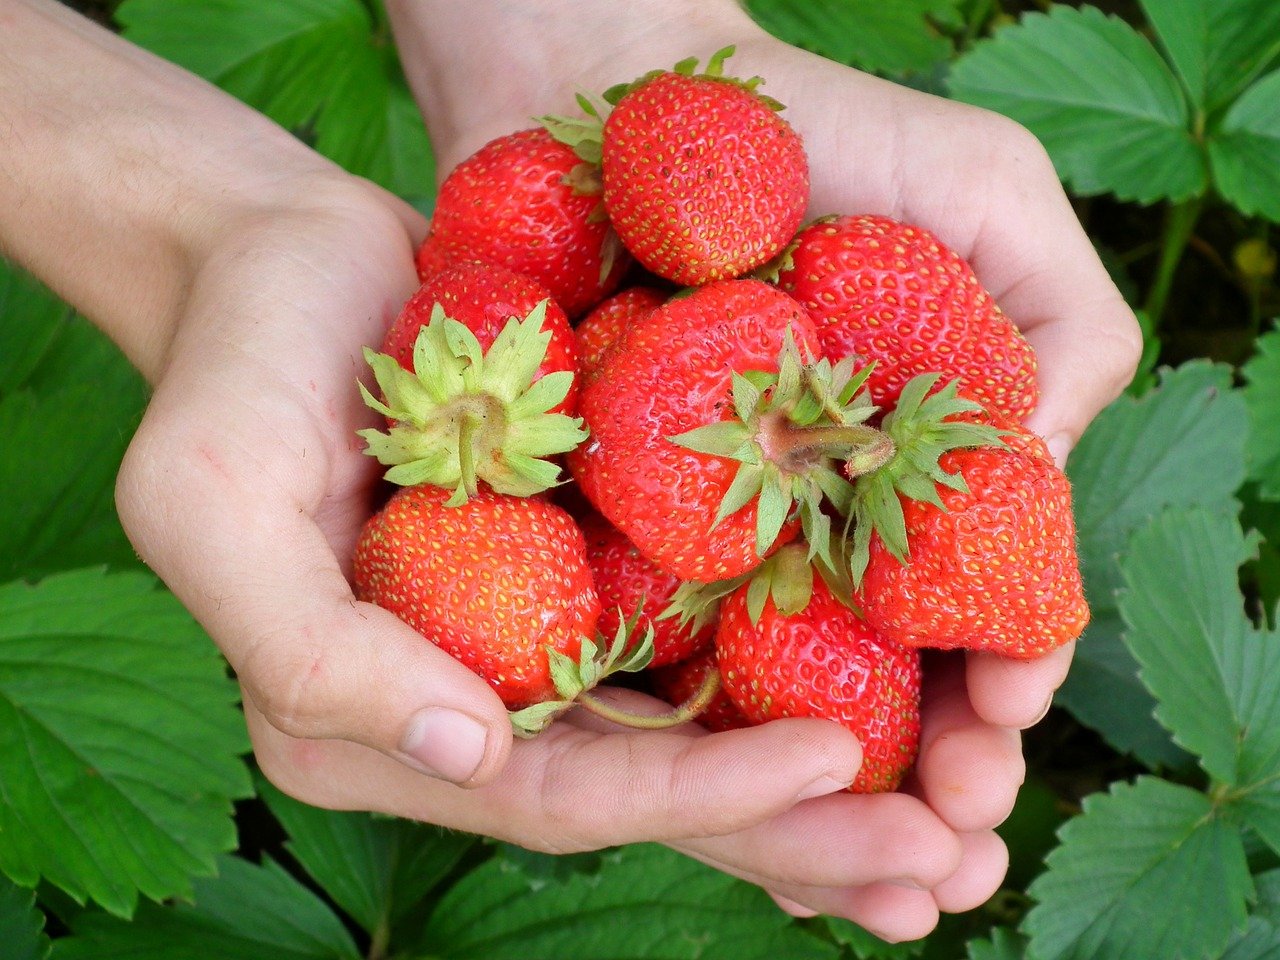 內湖草莓季,內湖,草莓季,白石湖,採草莓,2021內湖草莓季,白石湖休閒農業區,草莓園,內湖 採草莓